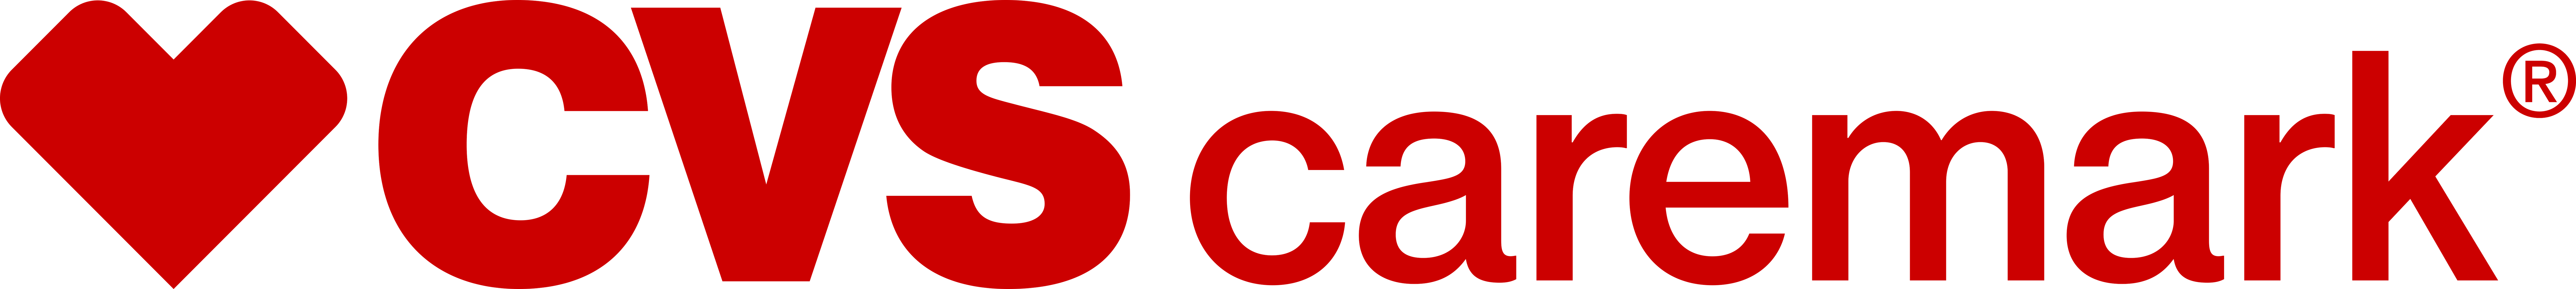 Caremark Logo - CVS Caremark Logo | CVS Health